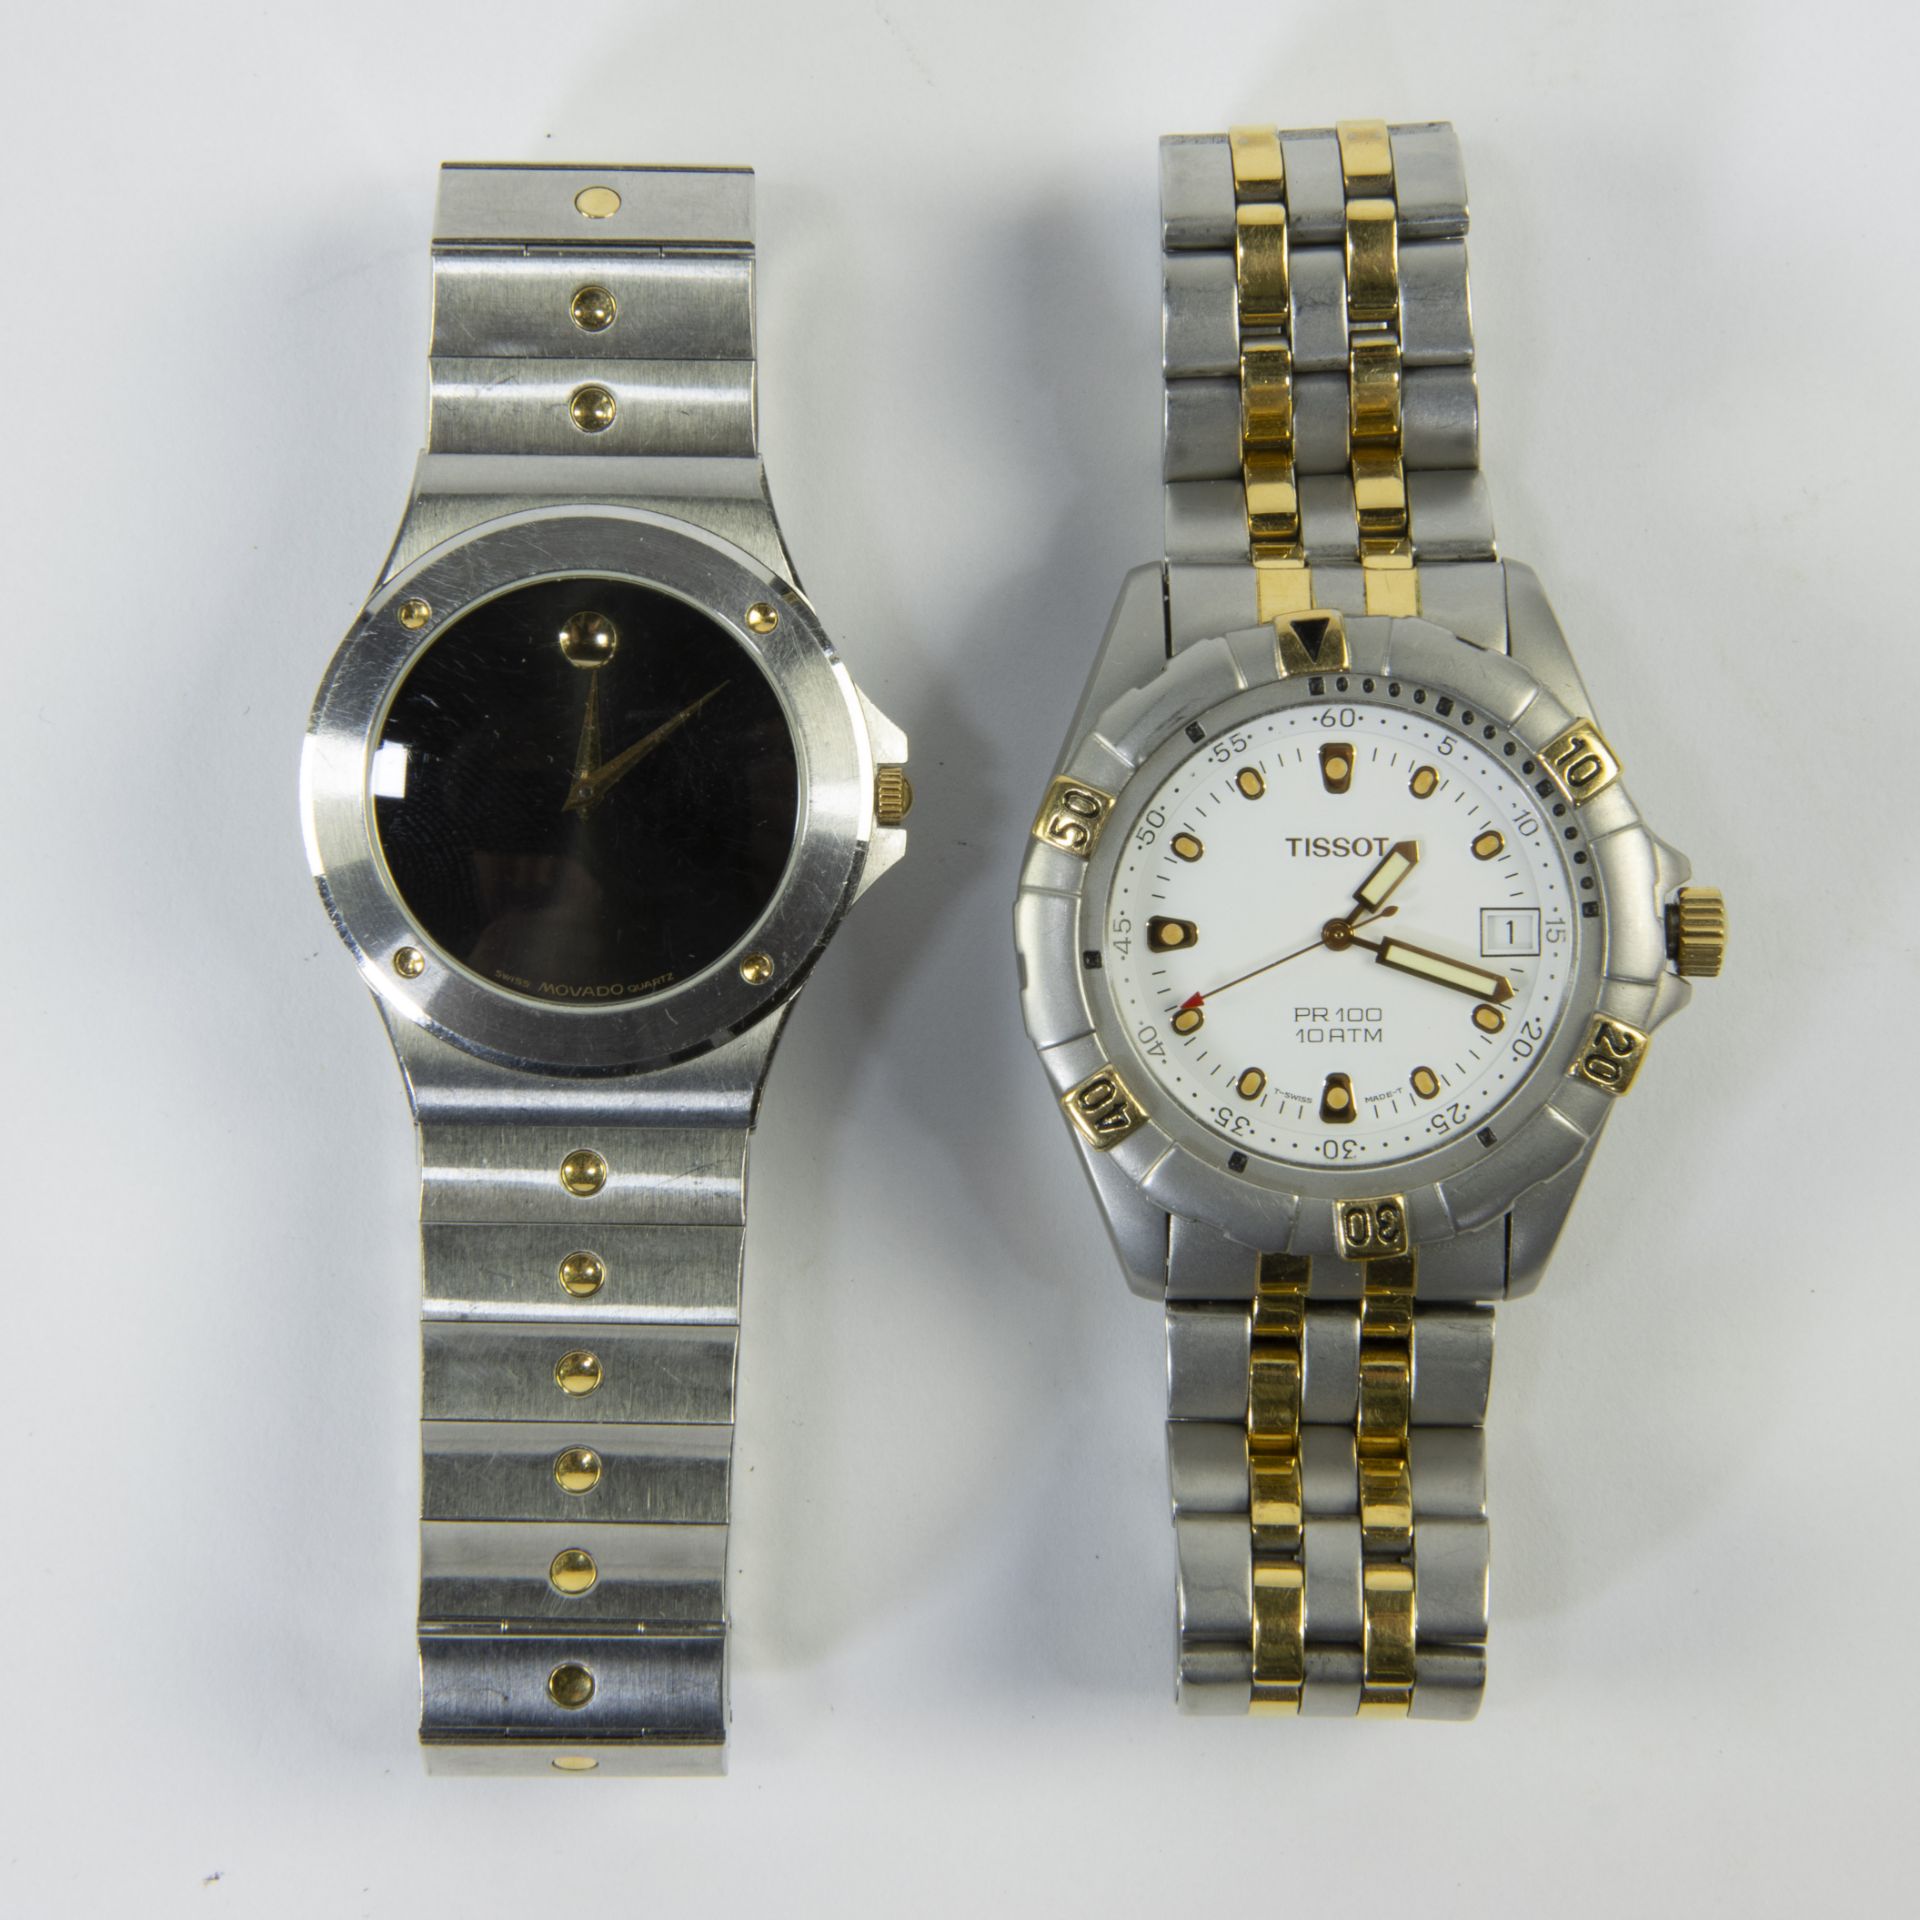 2 wristwatches, TISSOT PR100 Swiss made and MOVADO Quartz Swiss made